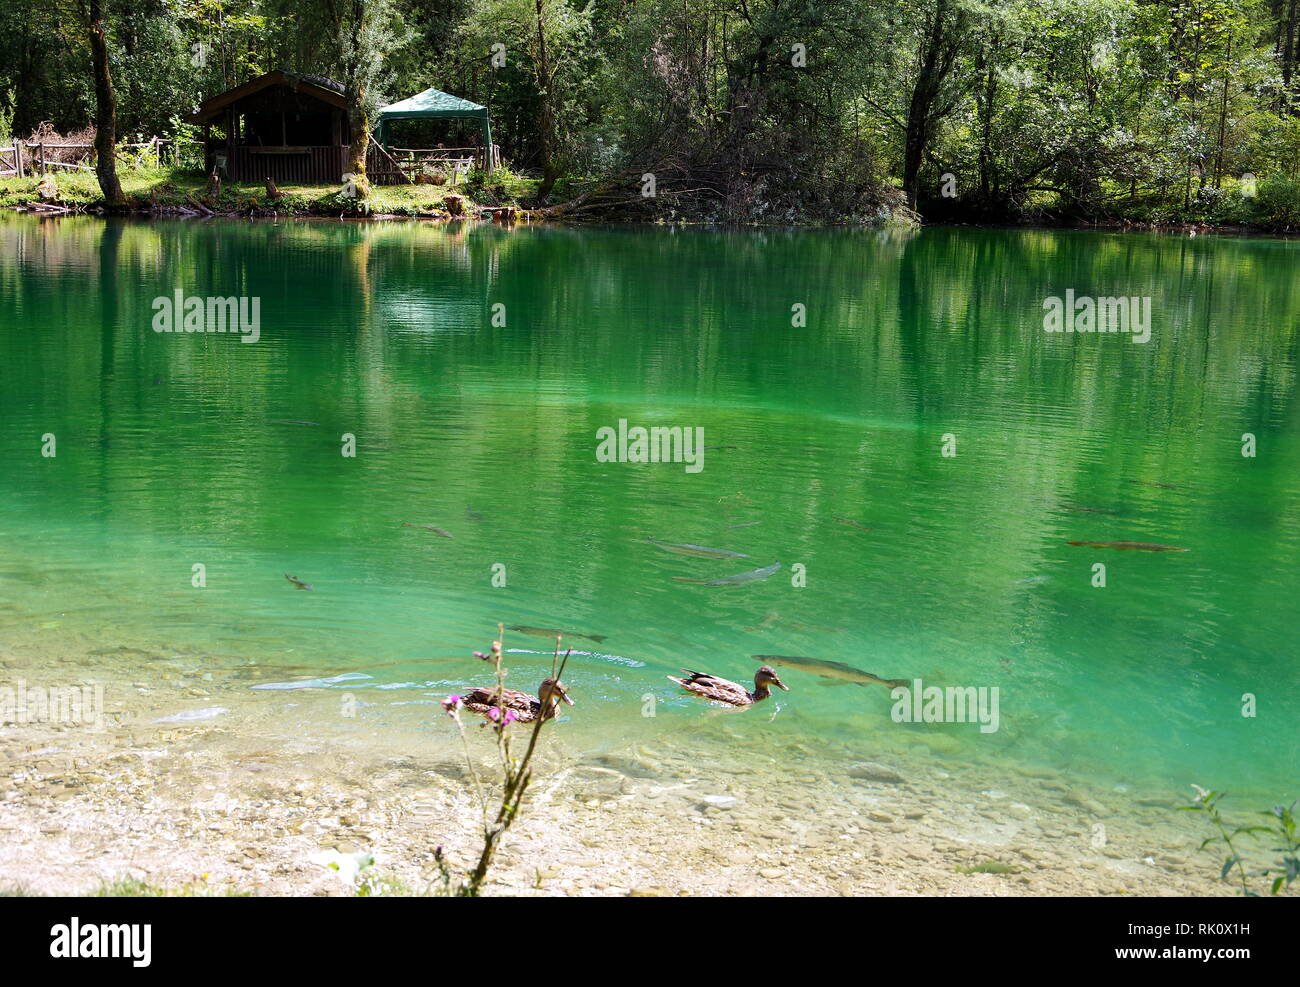 Piccolo lago con acqua di colore verdastro con pesci e anatre Foto Stock